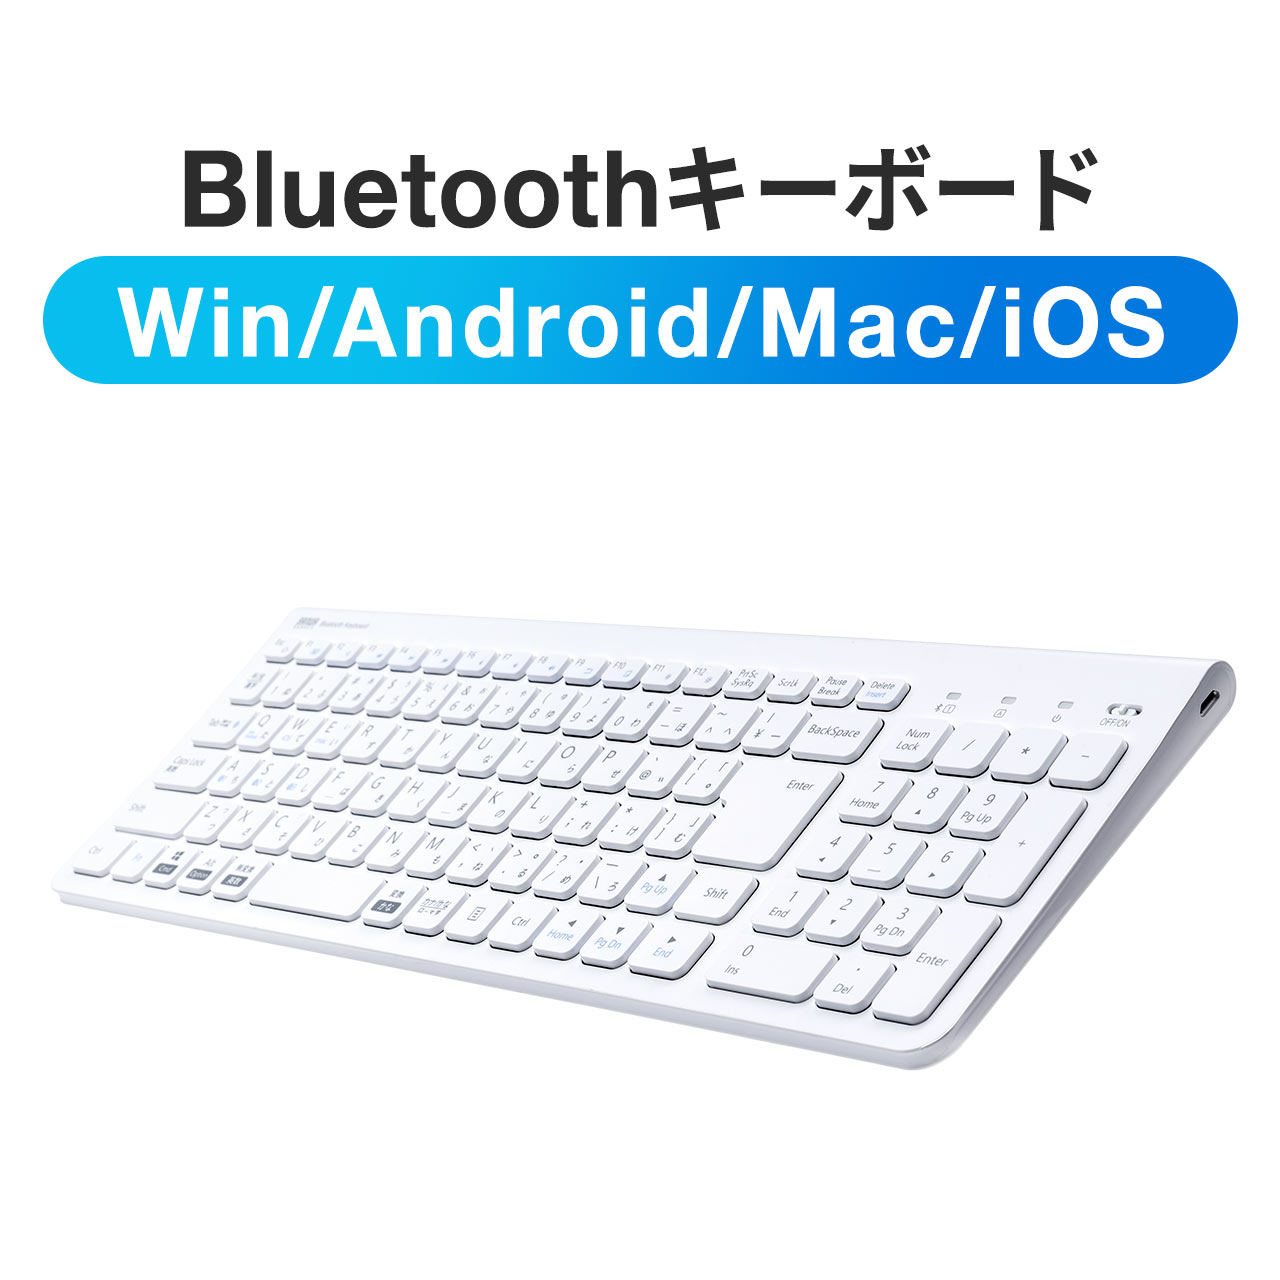 キーボード Bluetooth ワイヤレス 無線 充電式 薄型 軽量 マルチペアリング Windows macOS iOS Android iPad テンキー付き パンタグラフ 400-SKB072